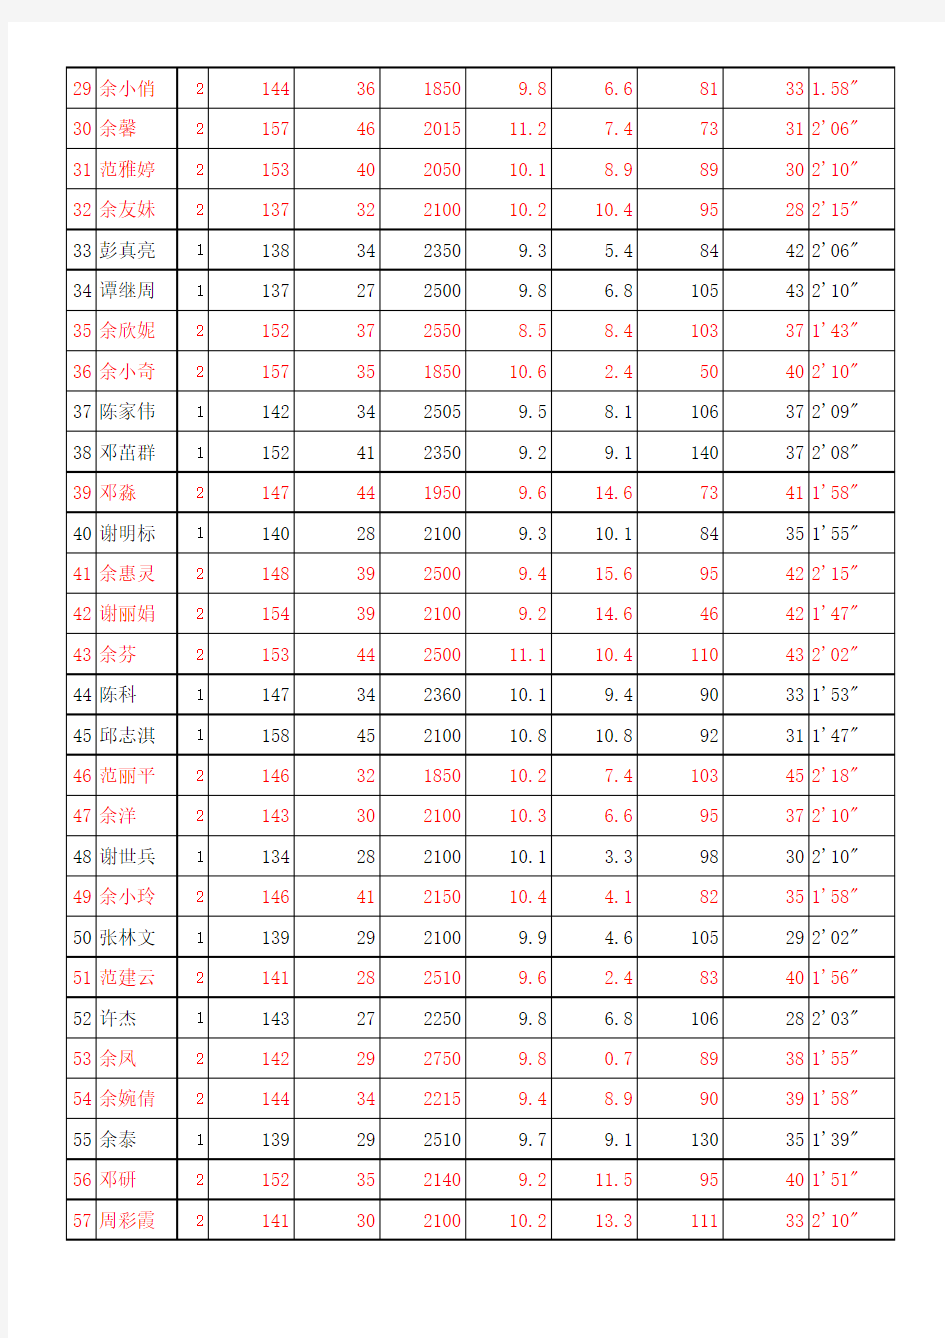 副本2014下国家体育测试记录表(003)